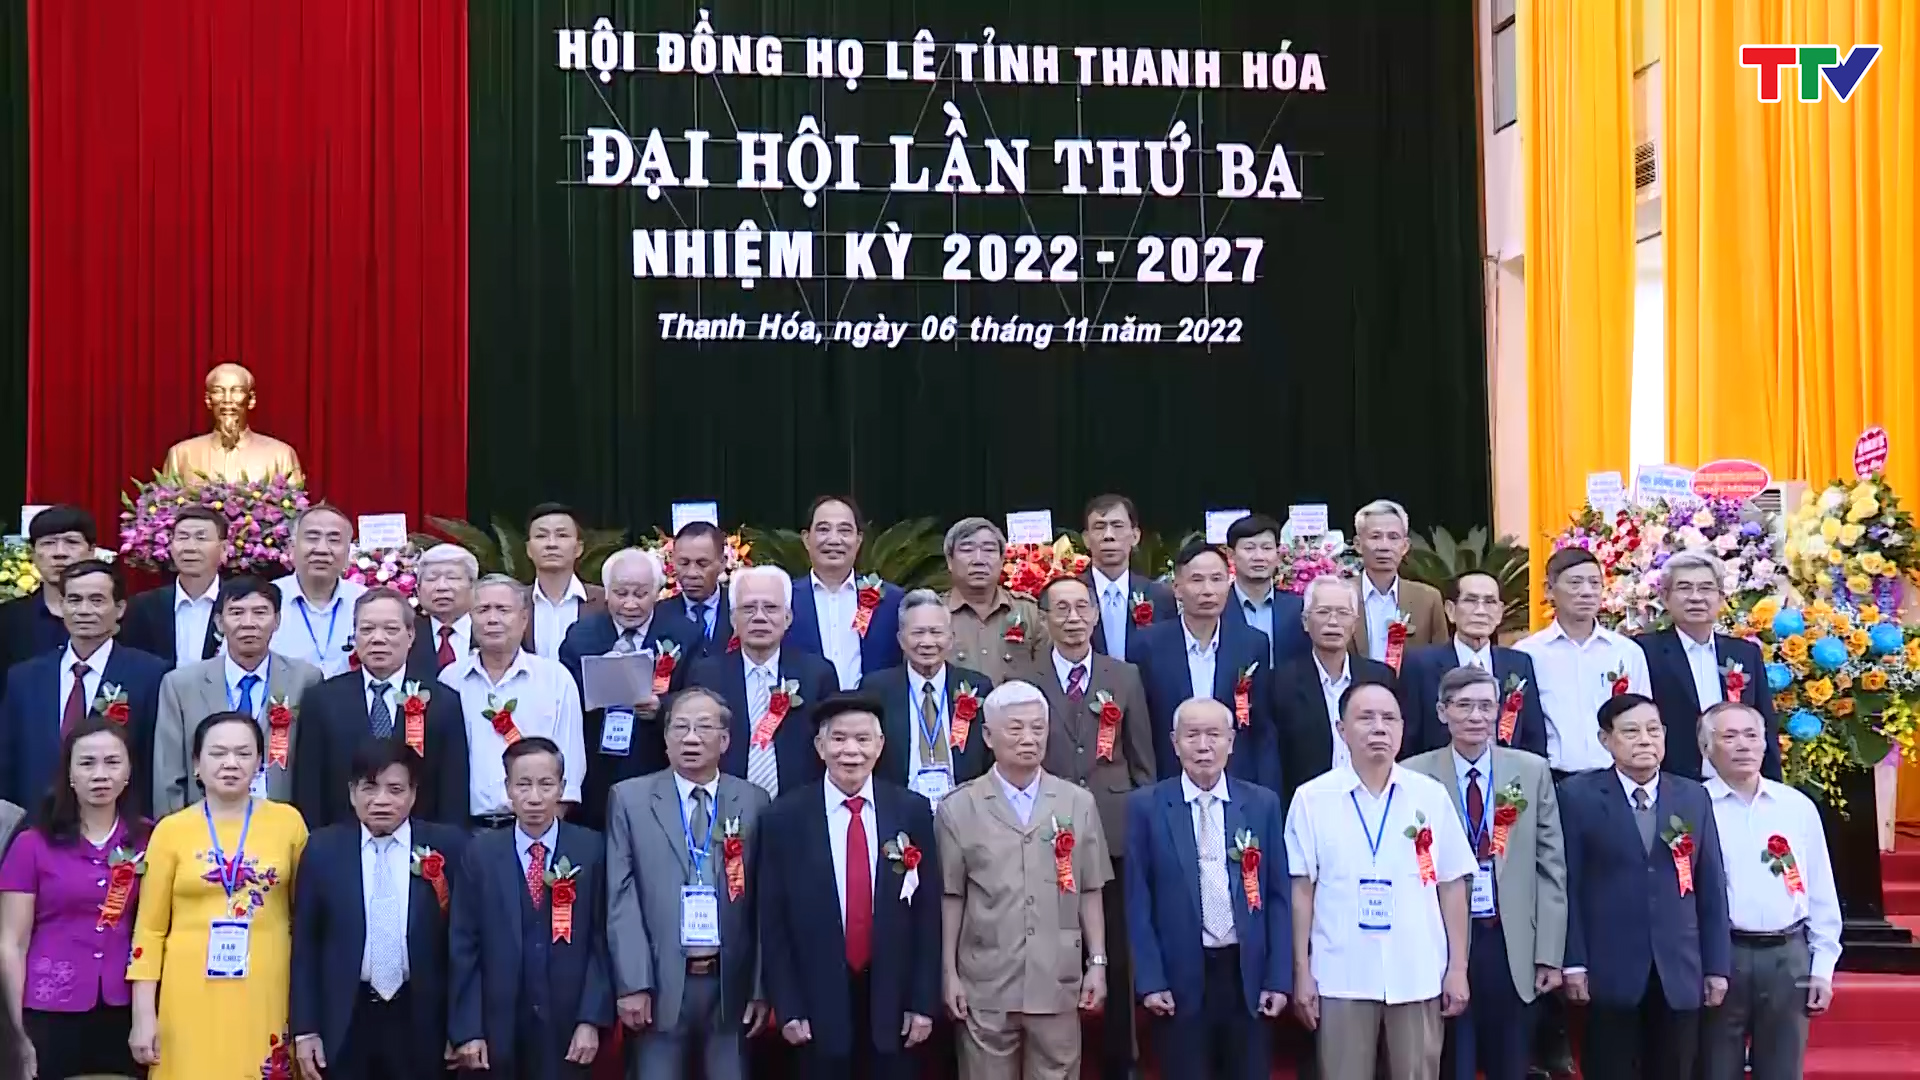 Hội đồng họ Lê Việt Nam, tỉnh Thanh Hóa đại hội đại biểu lần thứ III, nhiệm kỳ 2022-2027 - Ảnh 2.